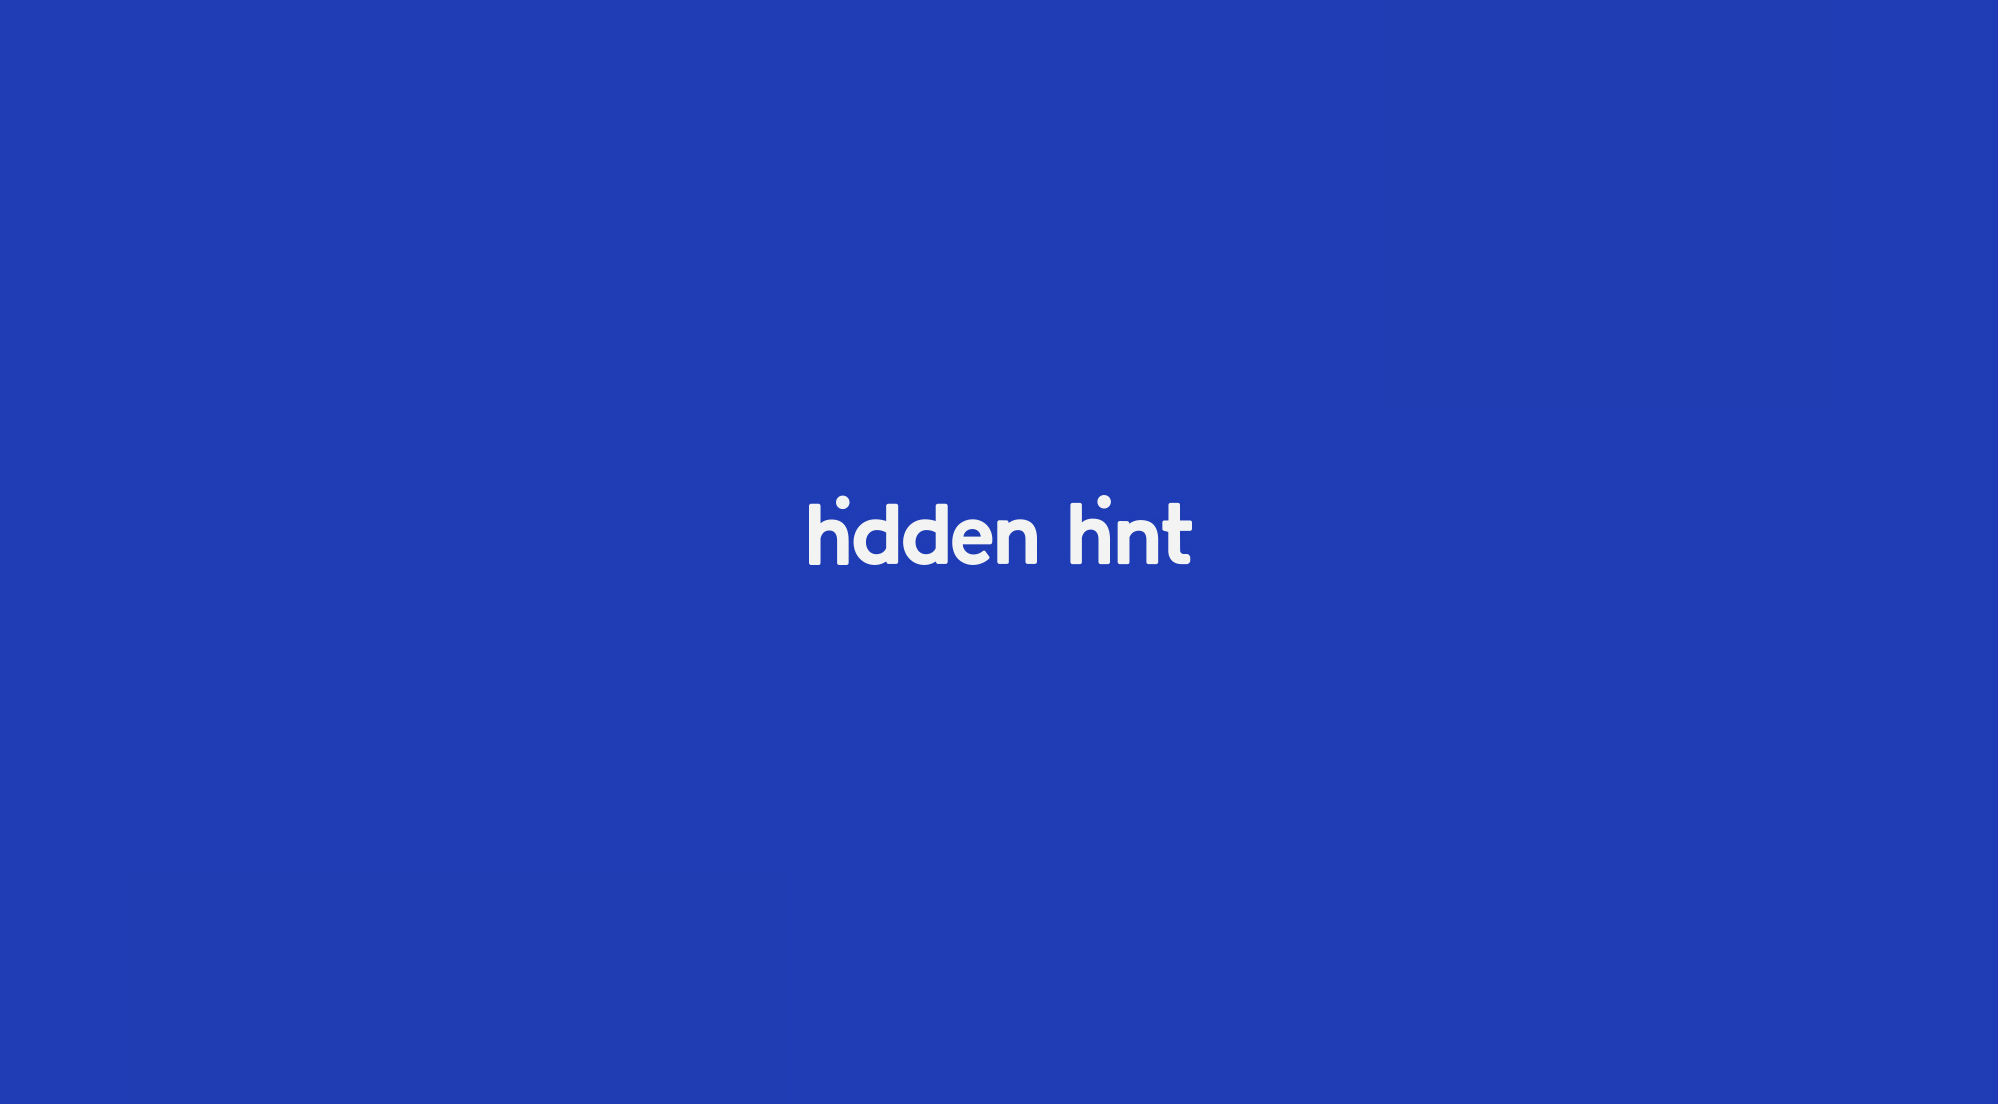 Hidden Hint dejó una pista oculta dentro de su logotipo, de una manera muy ingeniosa y atractiva, la publicidad fue realizada por ONCE.